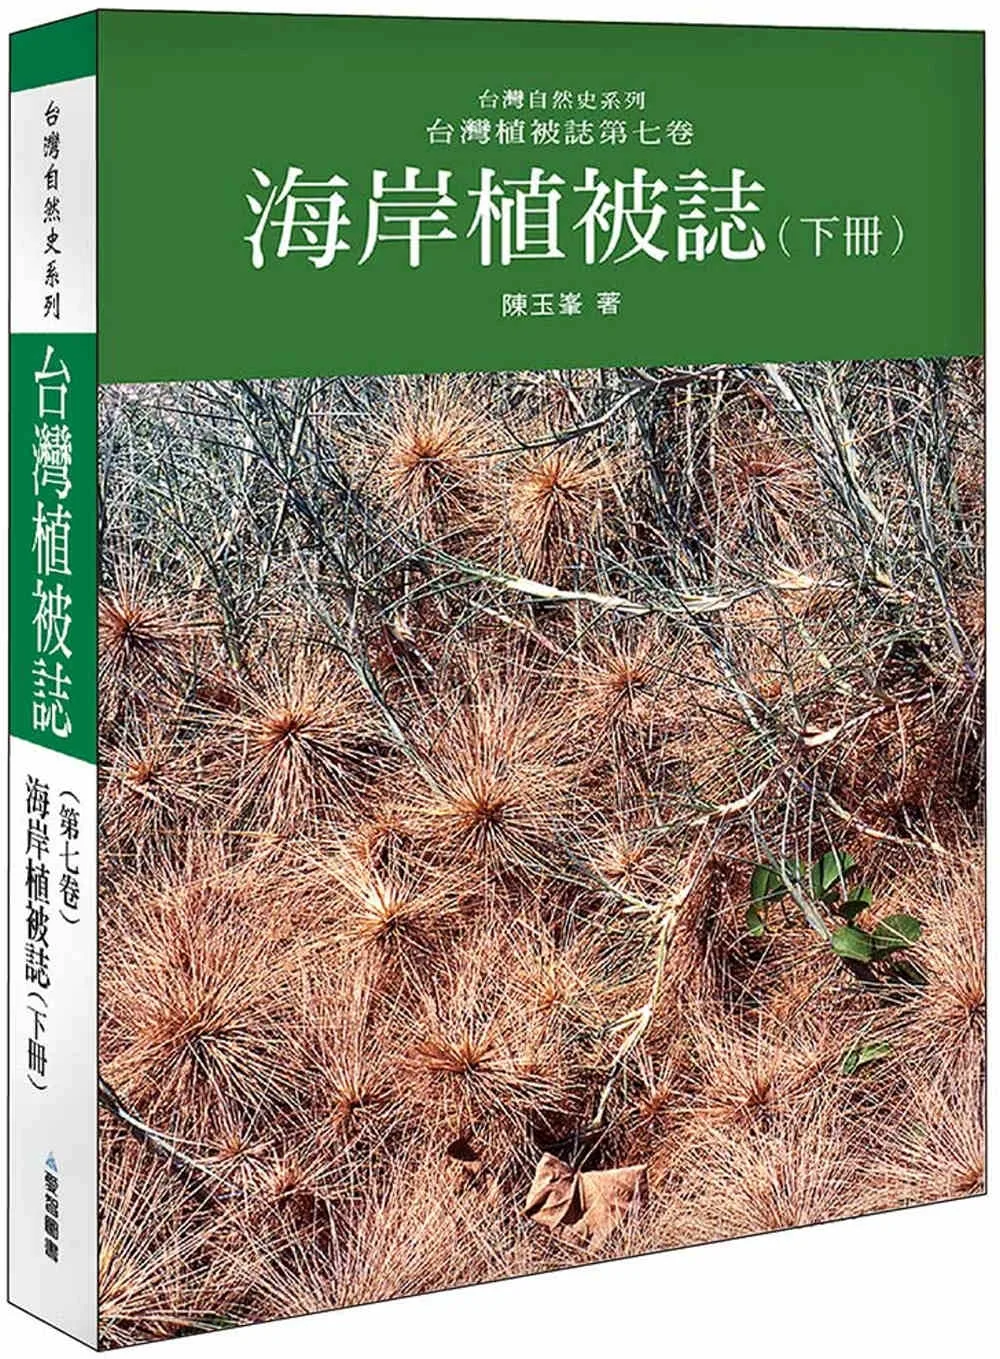 海岸植被誌〈下〉台灣植被誌第七卷